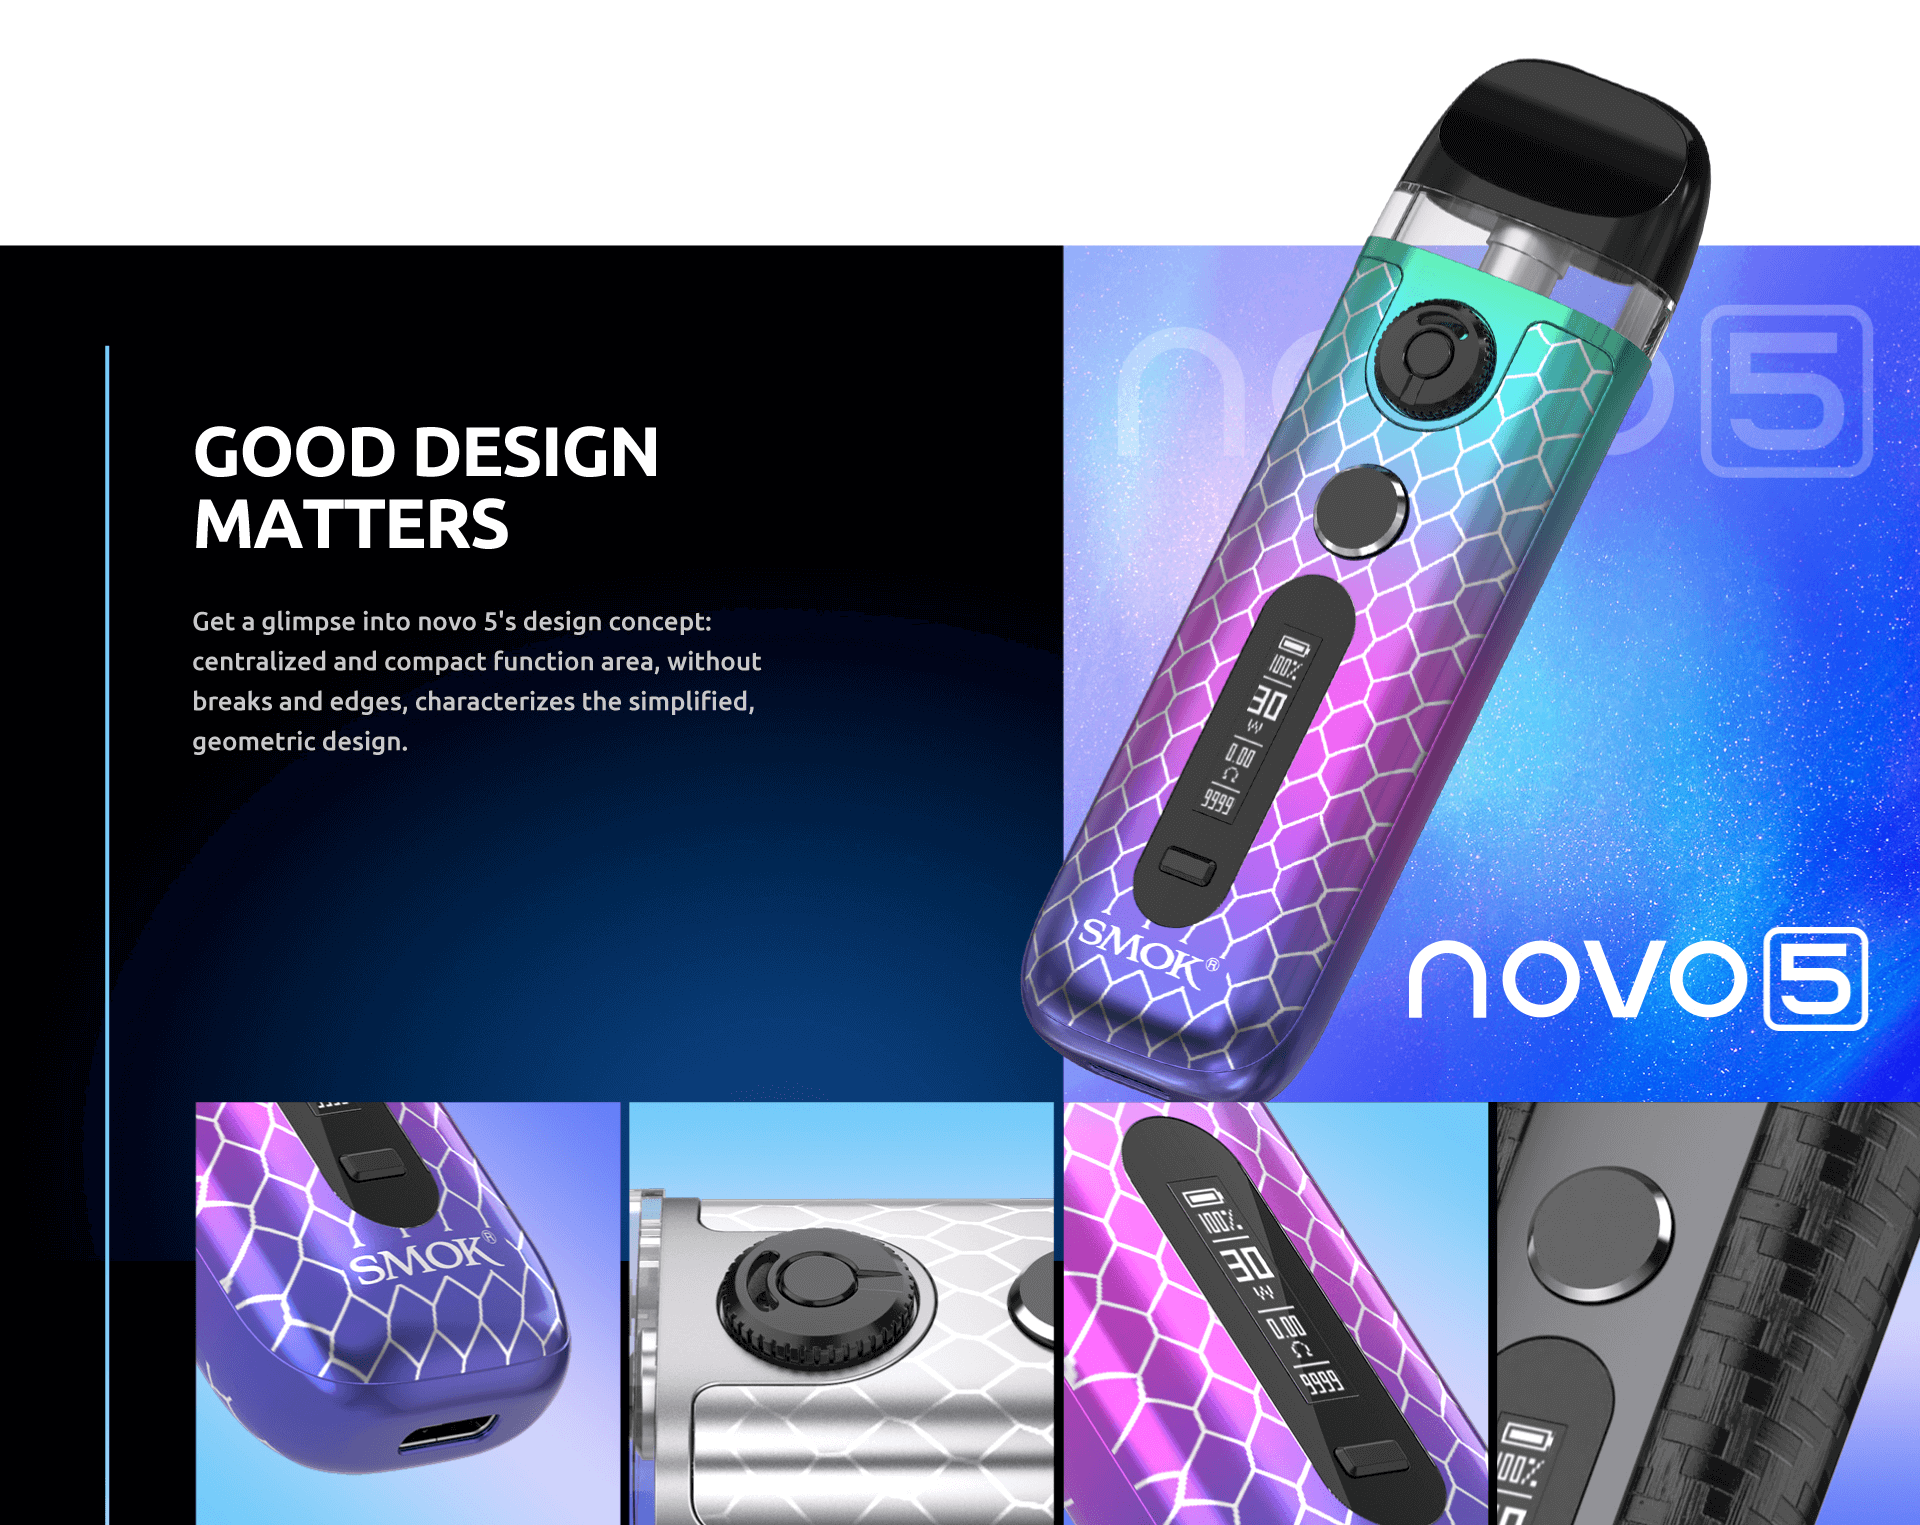 Smok Novo 5 | Compact Design